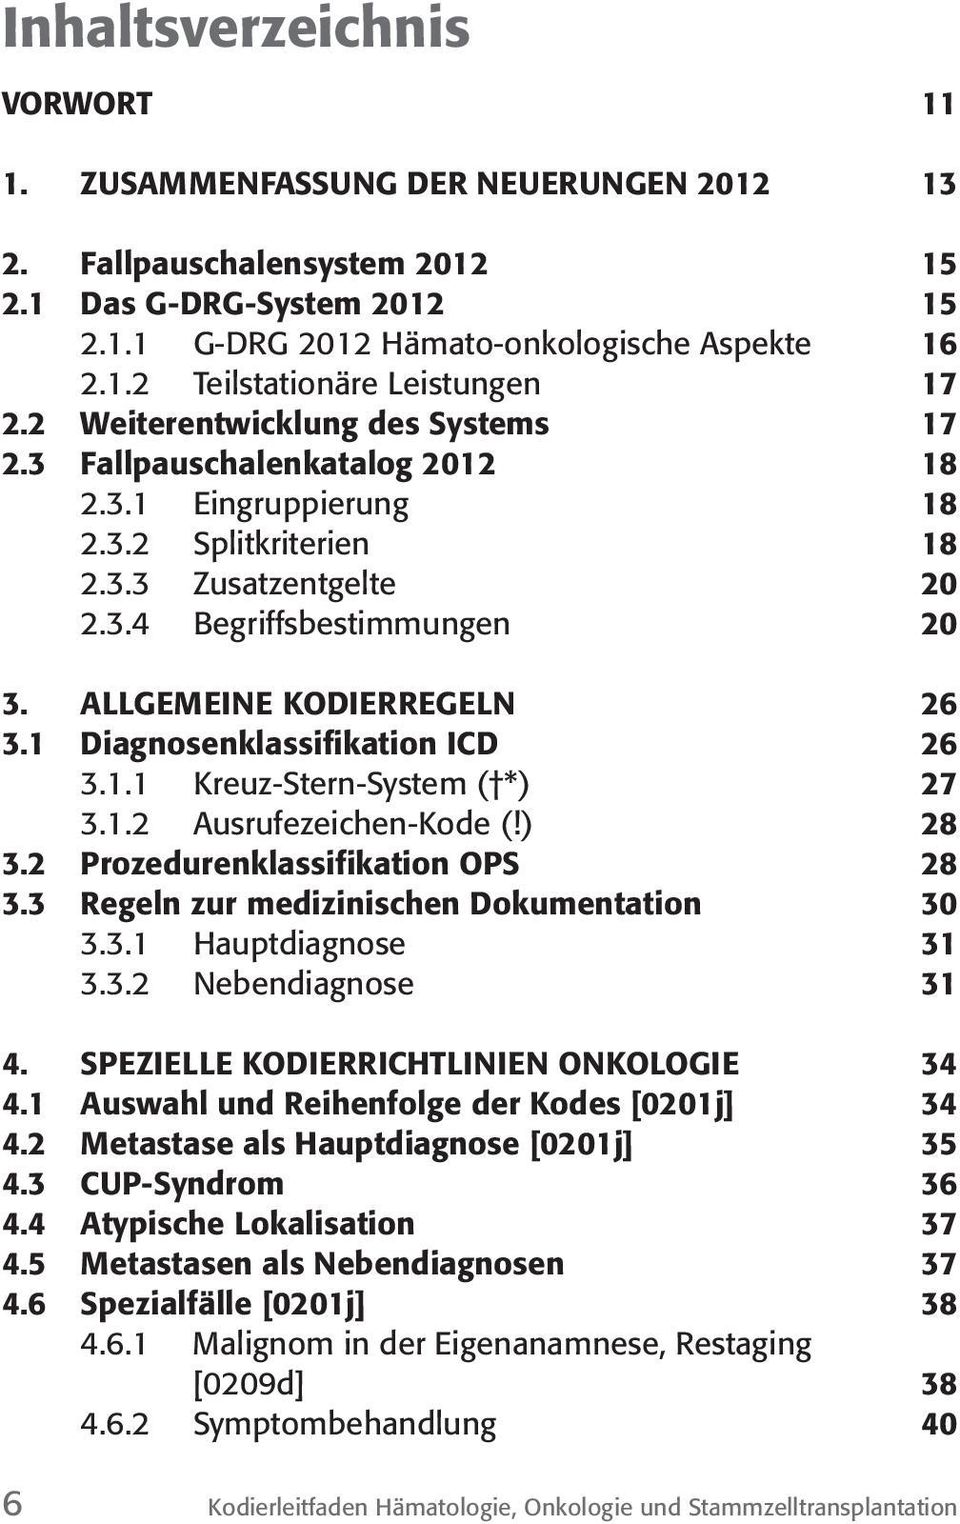 ALLGEMEINE KODIERREGELN 26 3.1 Diagnosenklassifikation ICD 26 3.1.1 Kreuz-Stern-System ( *) 27 3.1.2 Ausrufezeichen- (!) 28 3.2 Prozedurenklassifikation OPS 28 3.